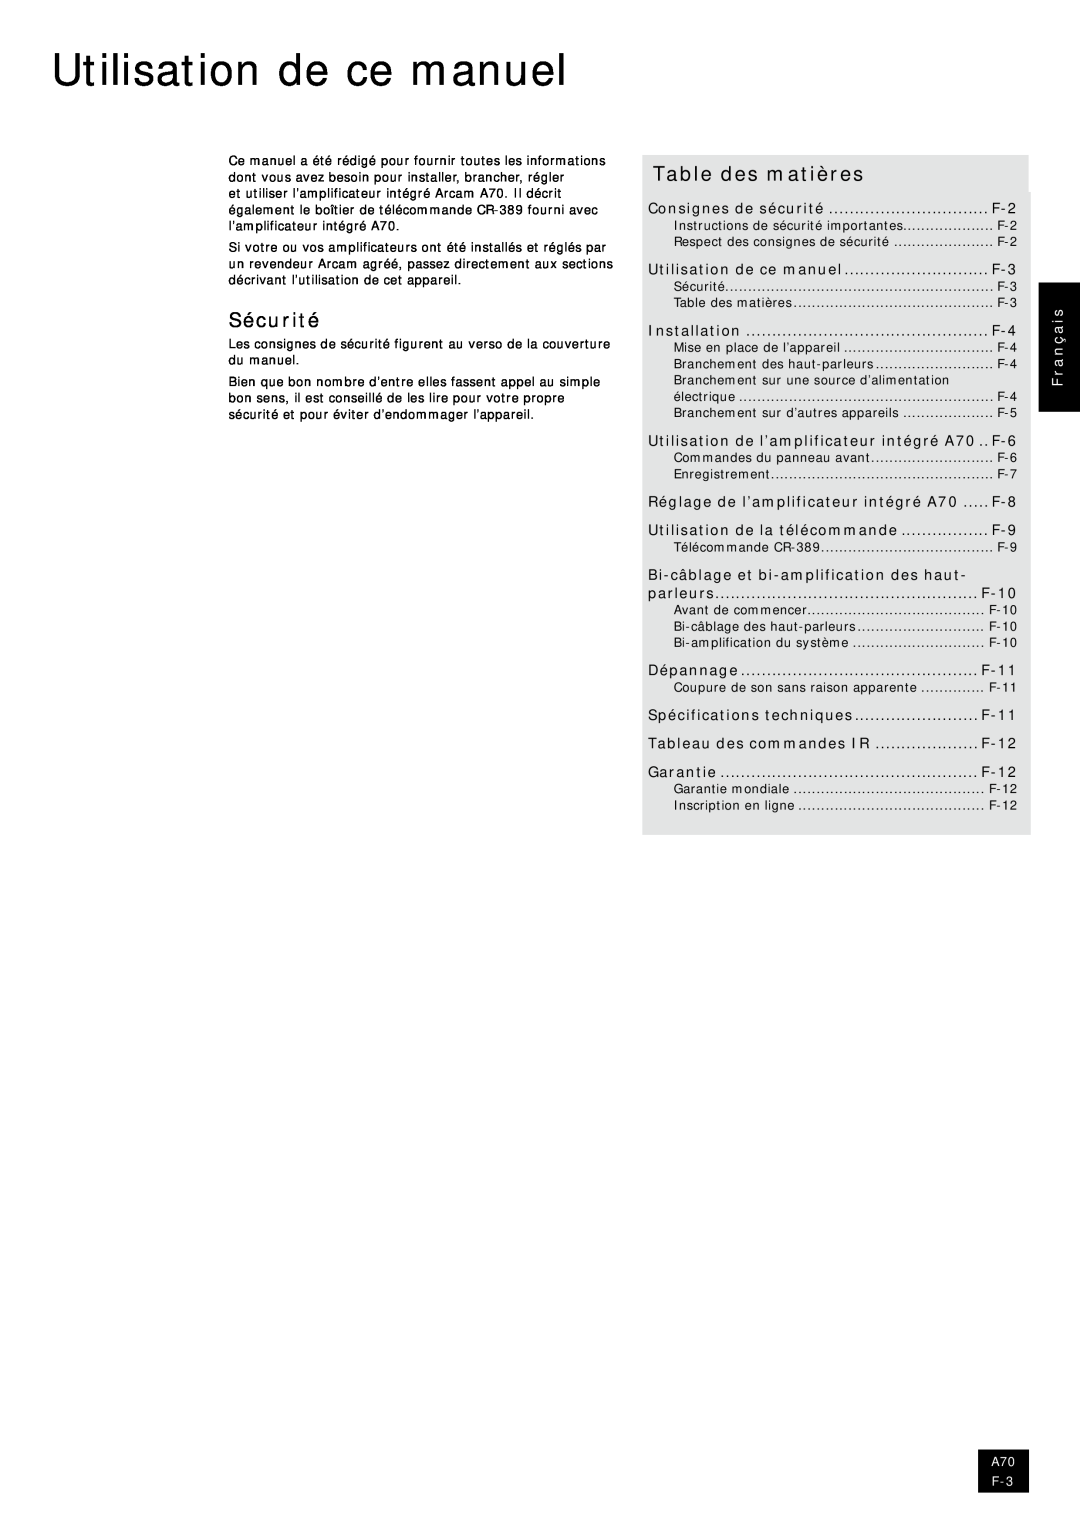 Arcam A70 manual Utilisation de ce manuel, Sécurité, Table des matières, Français 